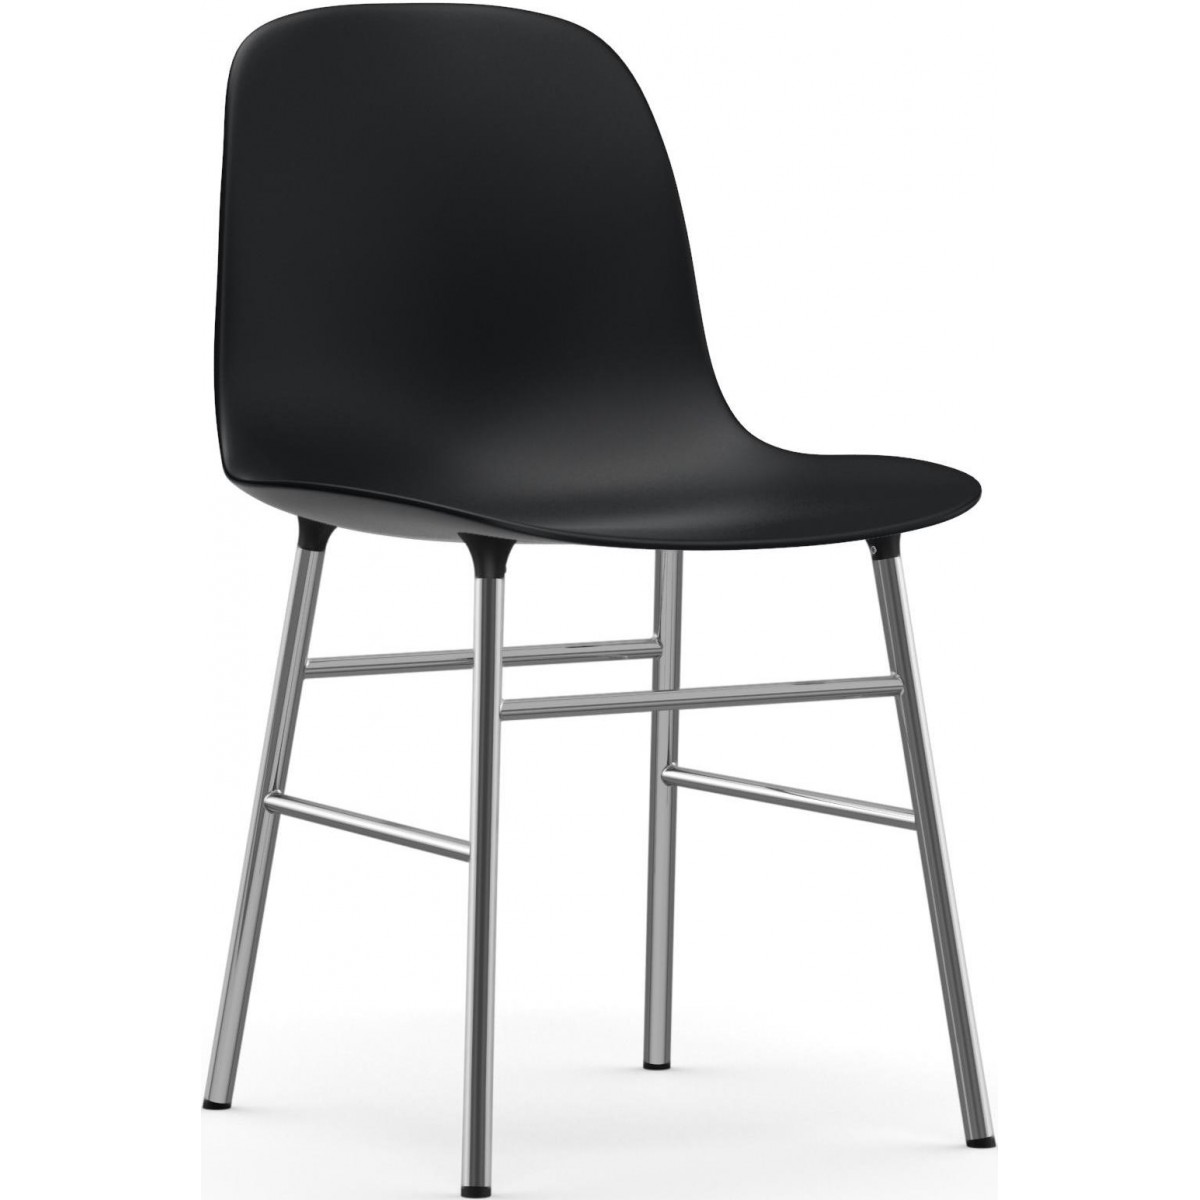 noir / chrome – Chaise Form